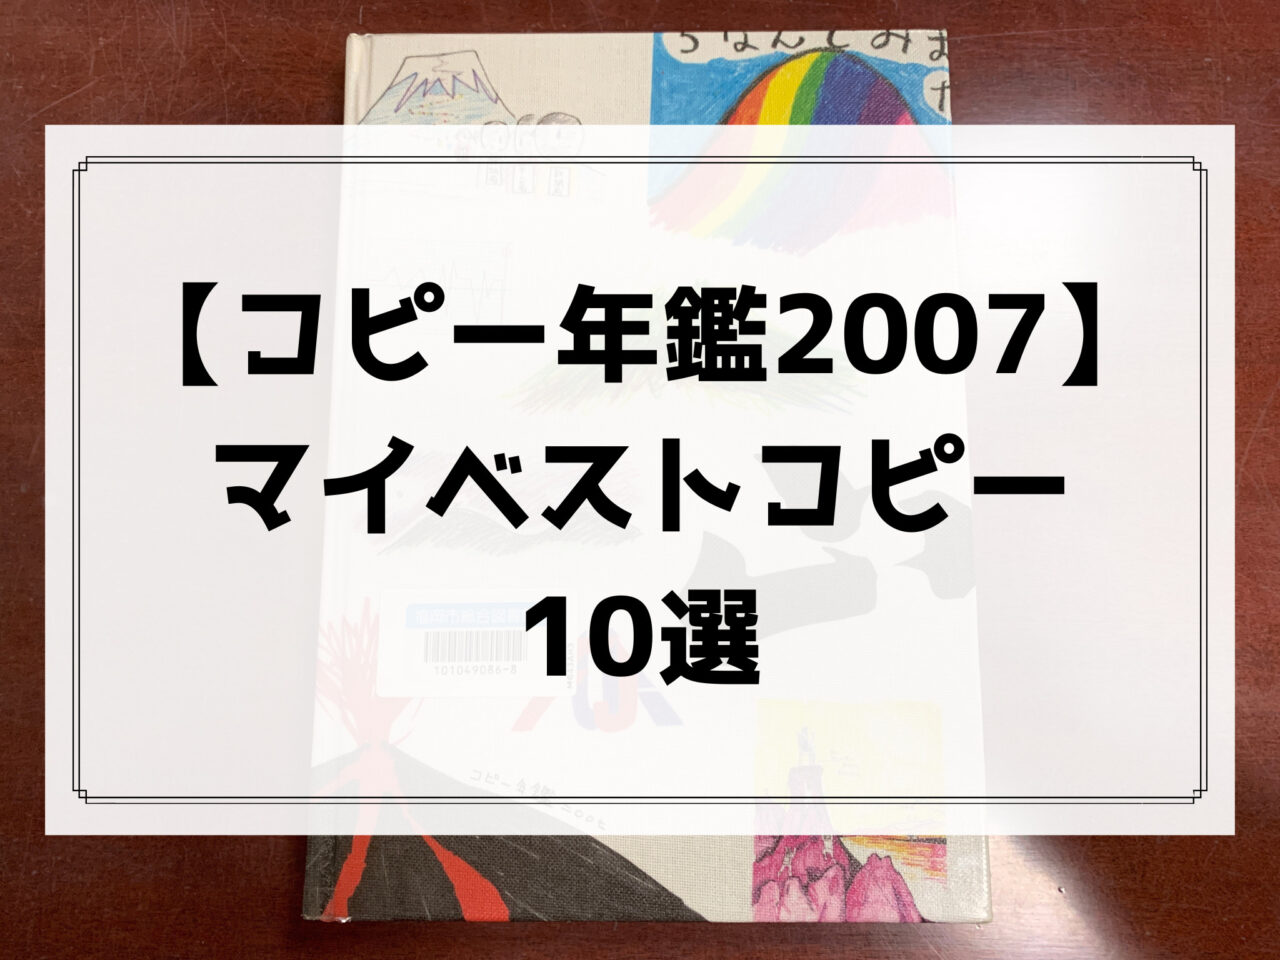 東京コピーライターズクラブコピー年鑑 2007